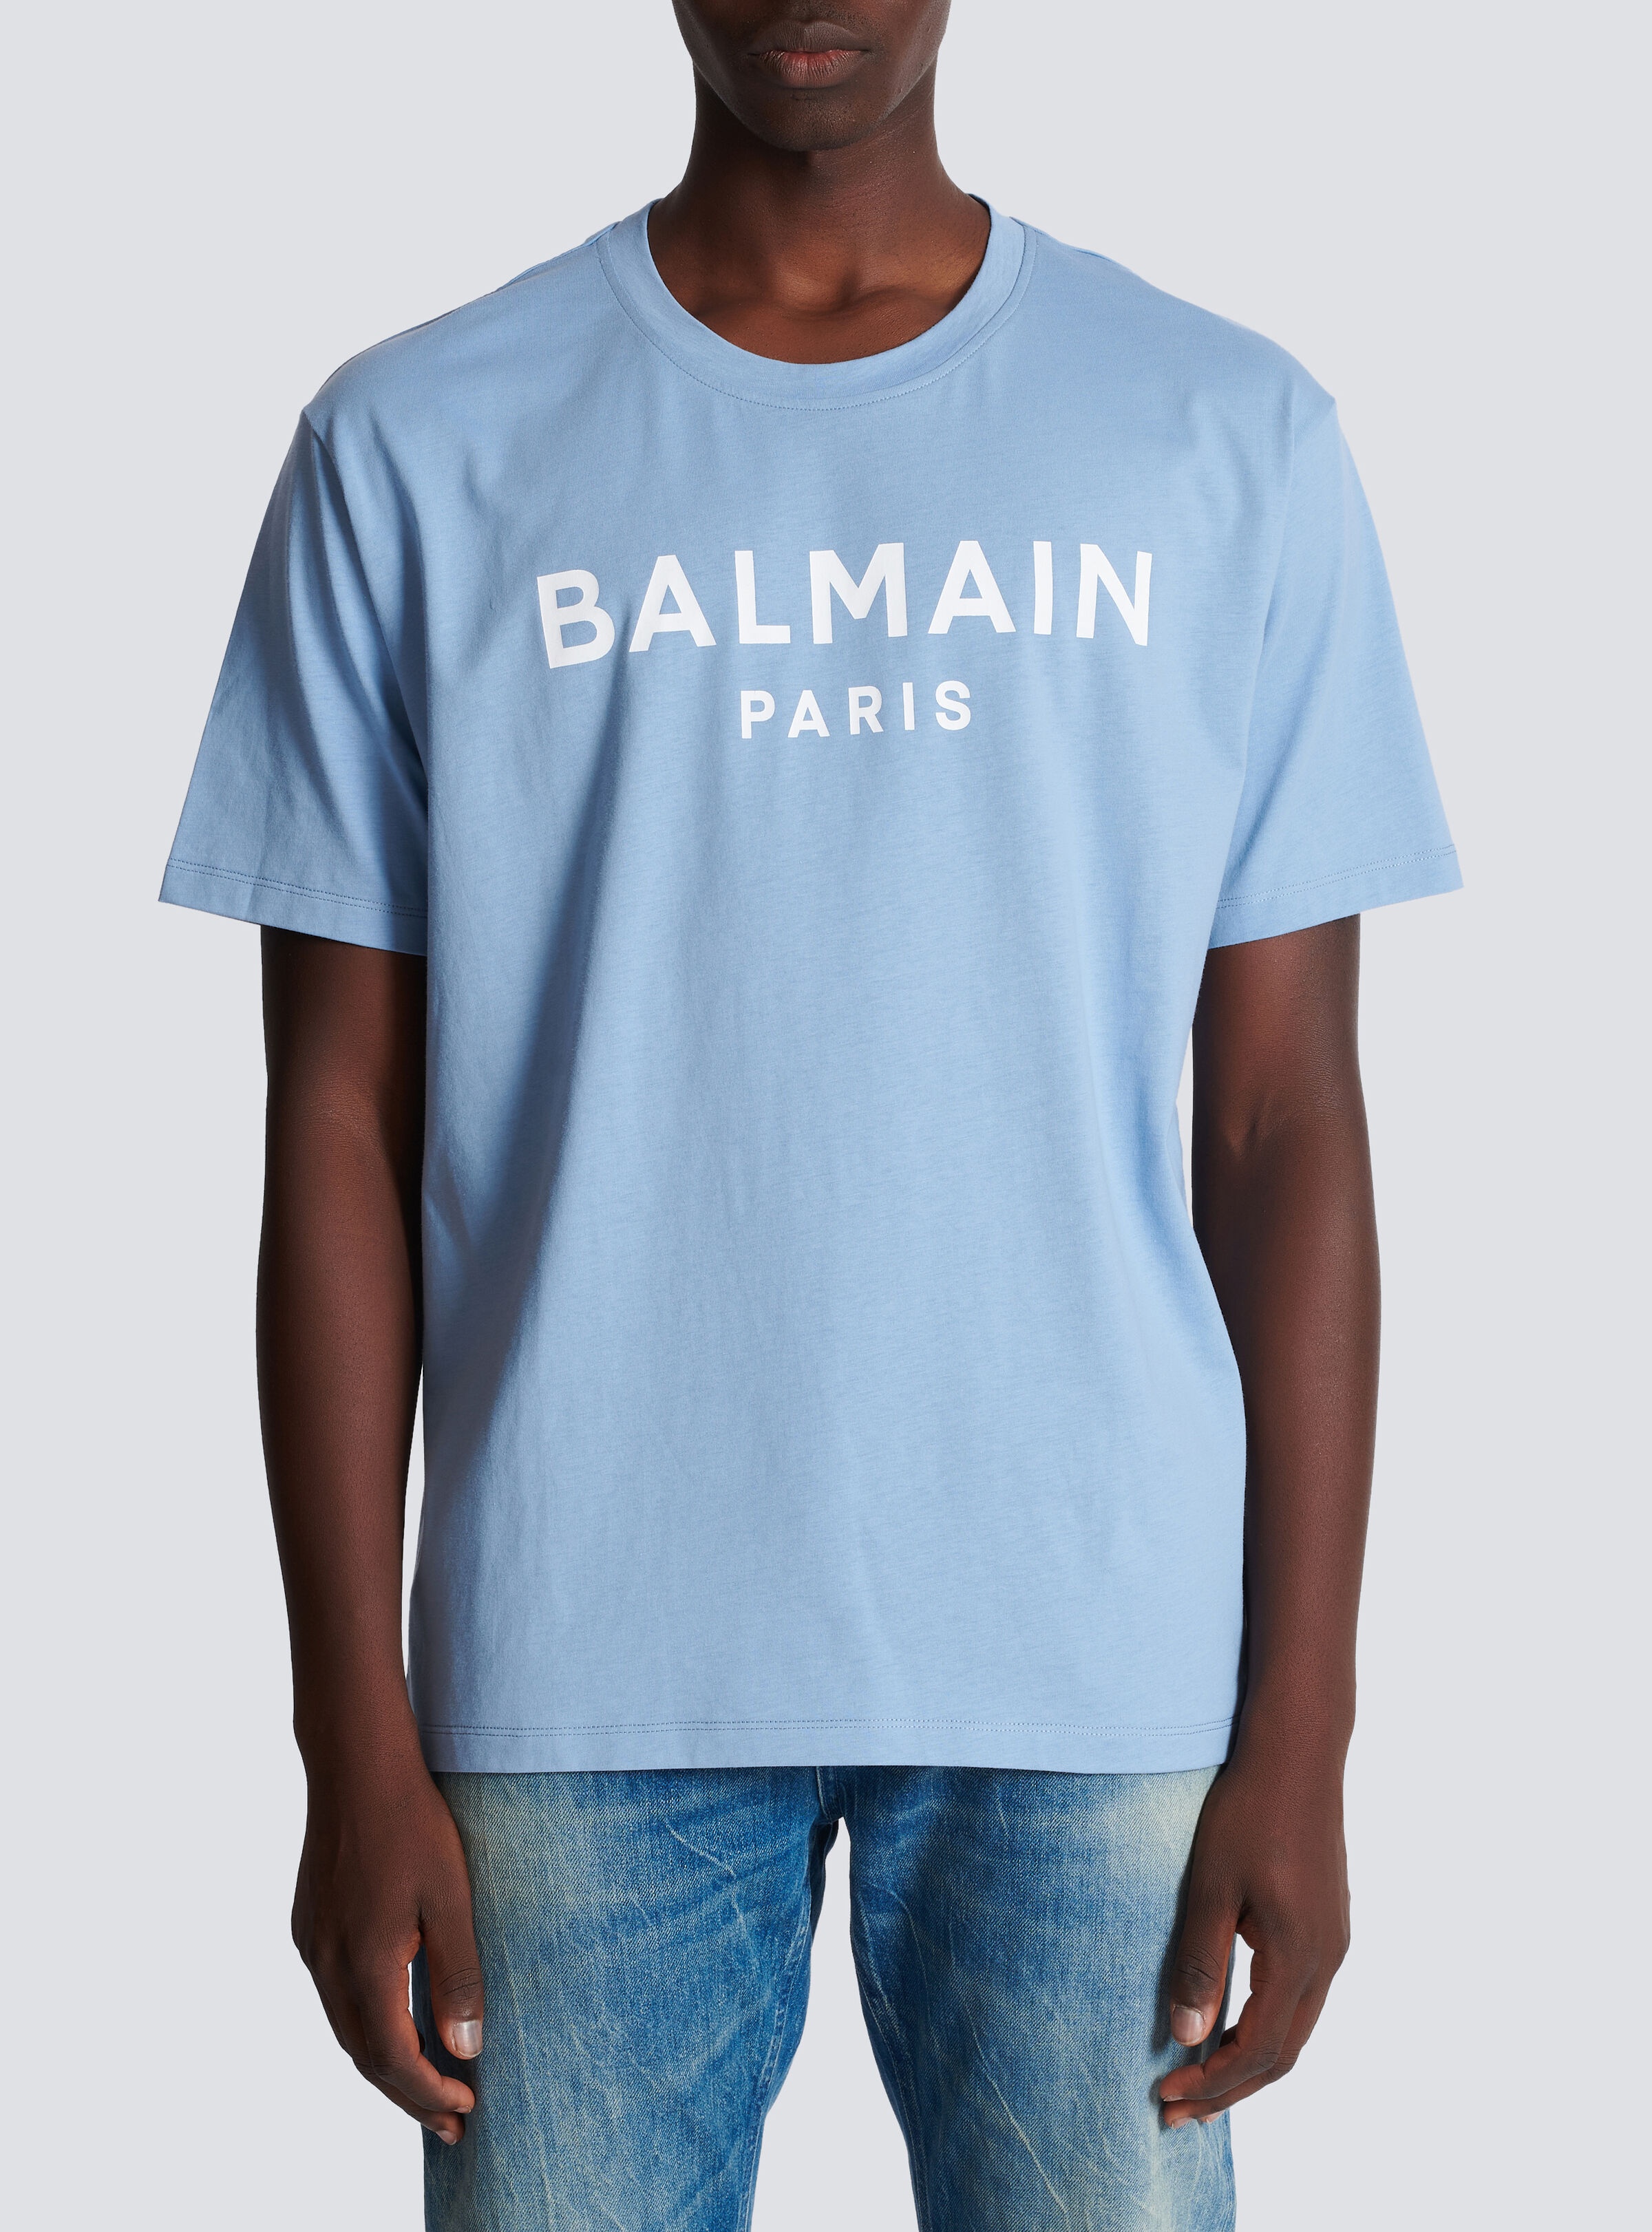 Balmain Paris T-shirt - 5